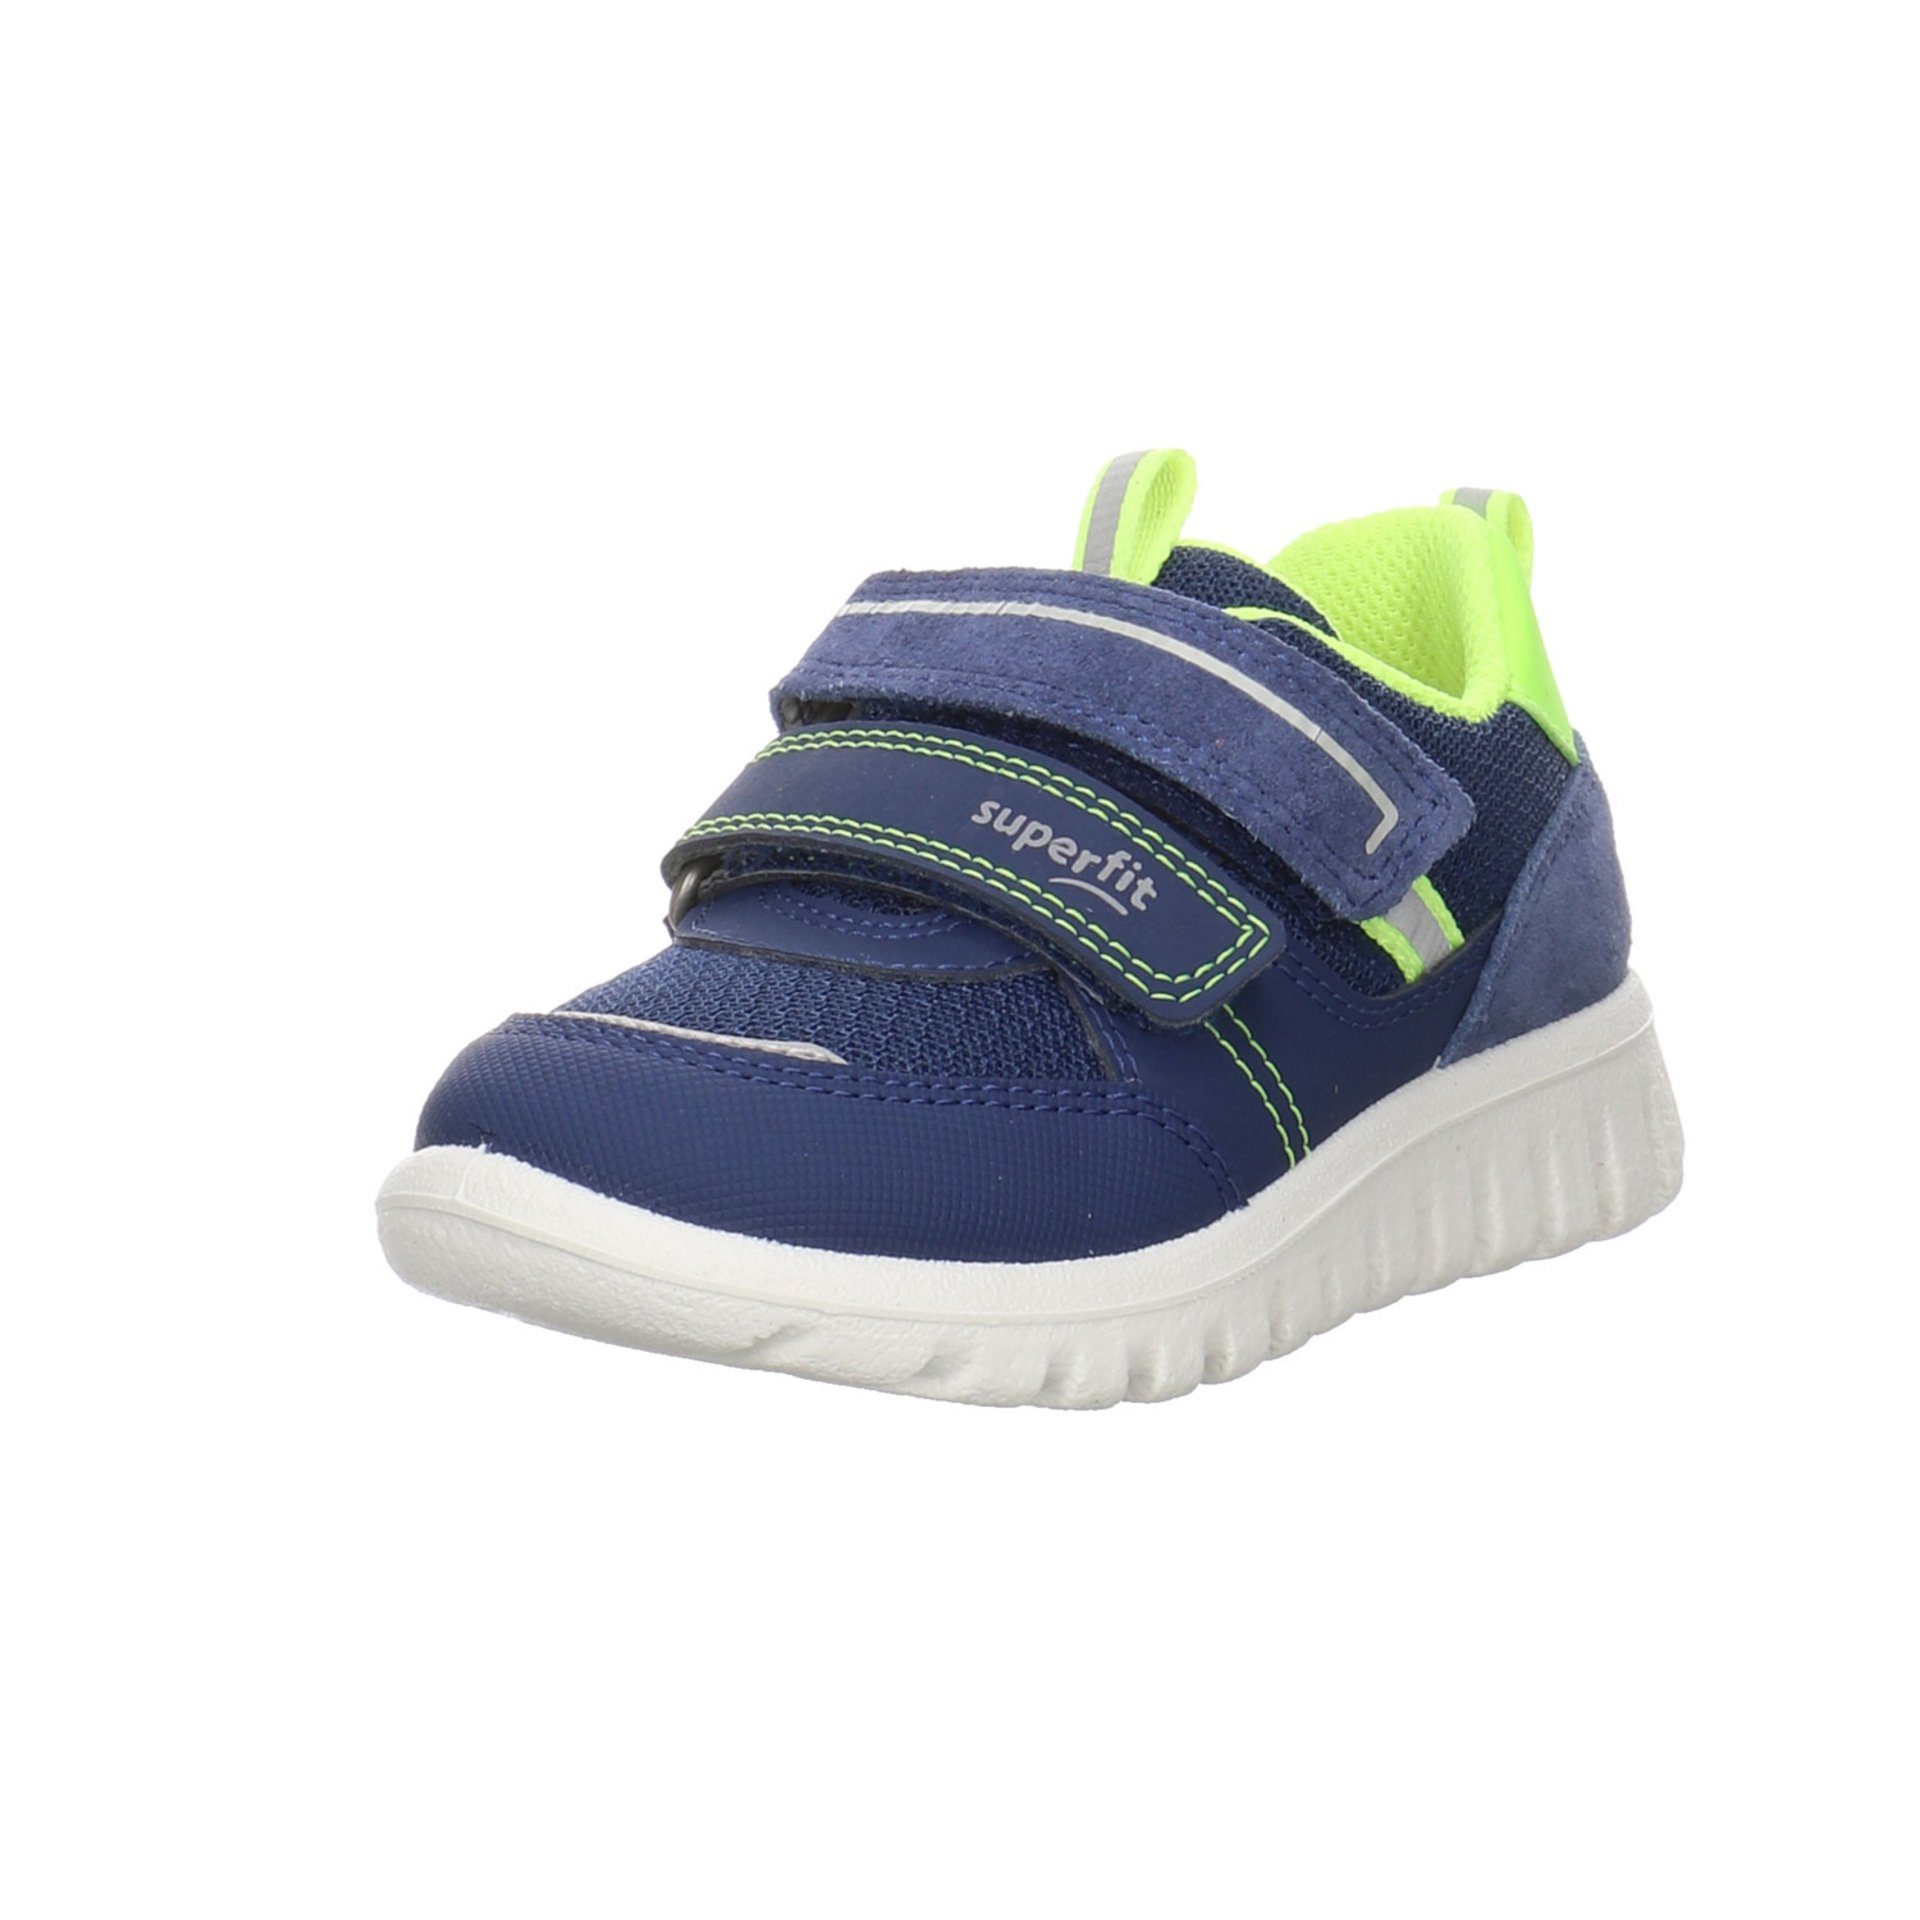 Superfit Sport7 Mini Sneaker reflektierende Details Sneaker Synthetikkombination BLAU/GELB (20401985)